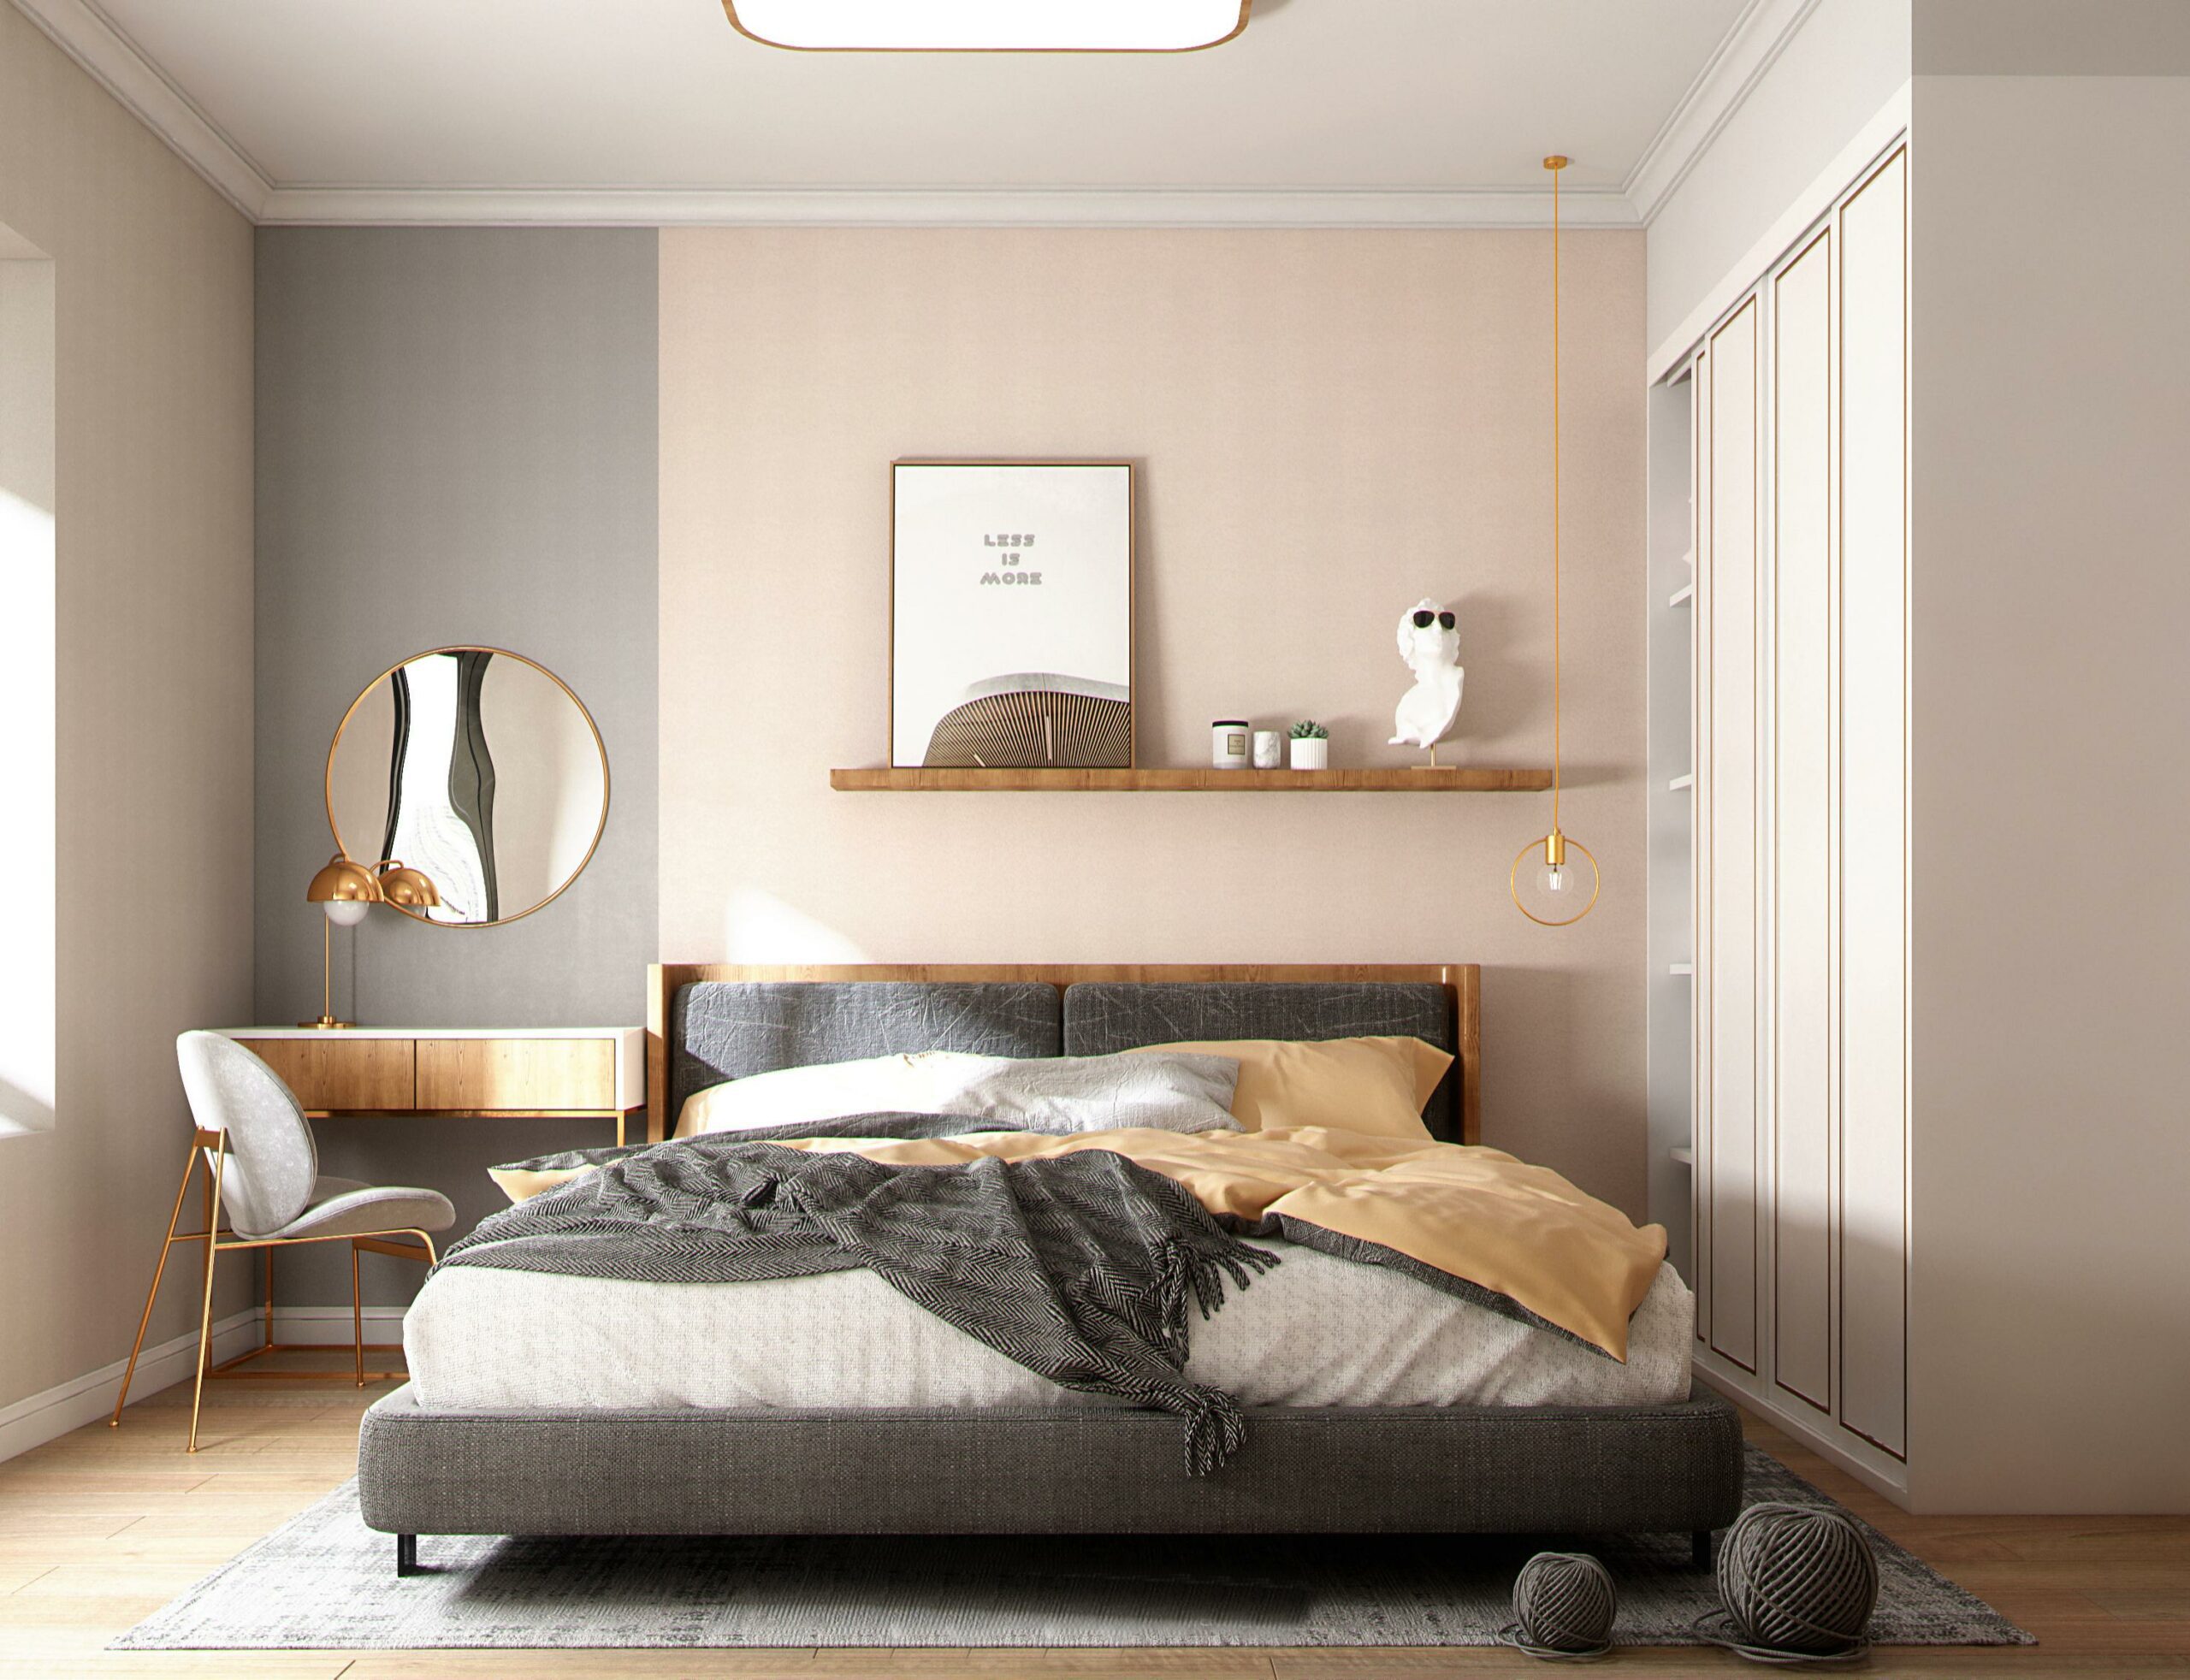 北歐風格的臥室設計可以利用跳色來增加趣味性